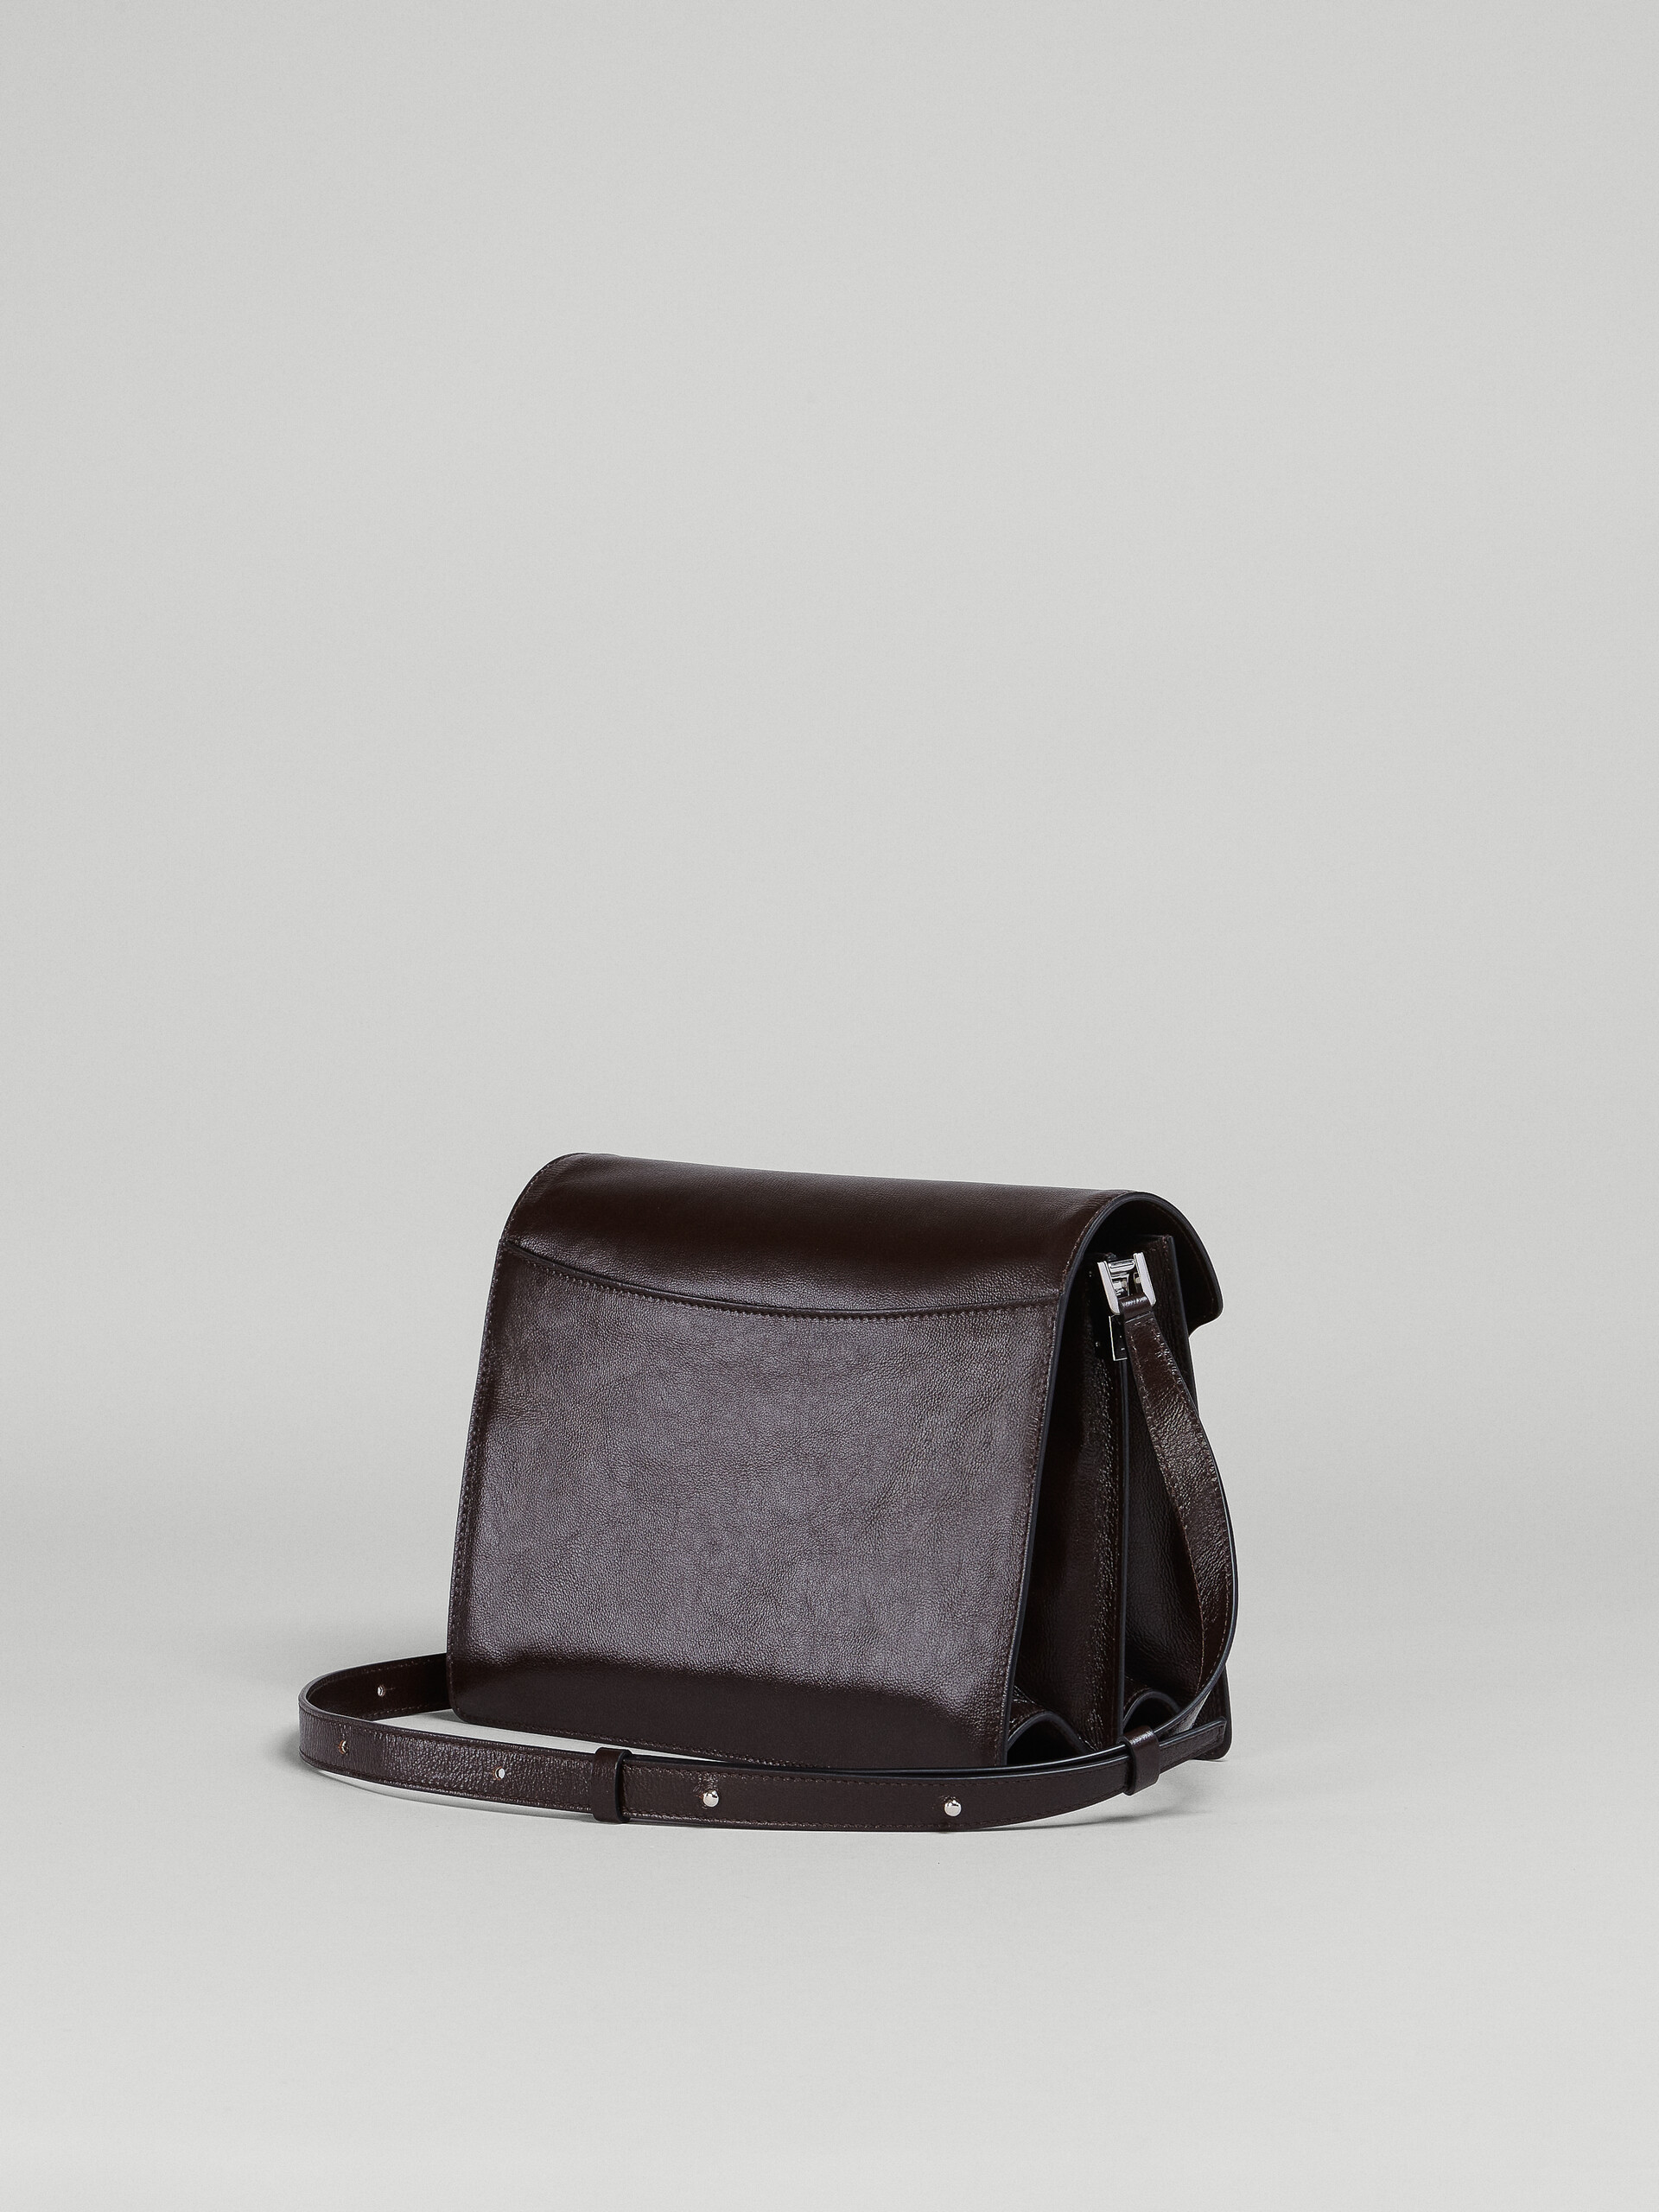 Trunk Soft Large Bag in black leather - Shoulder Bag - Image 2